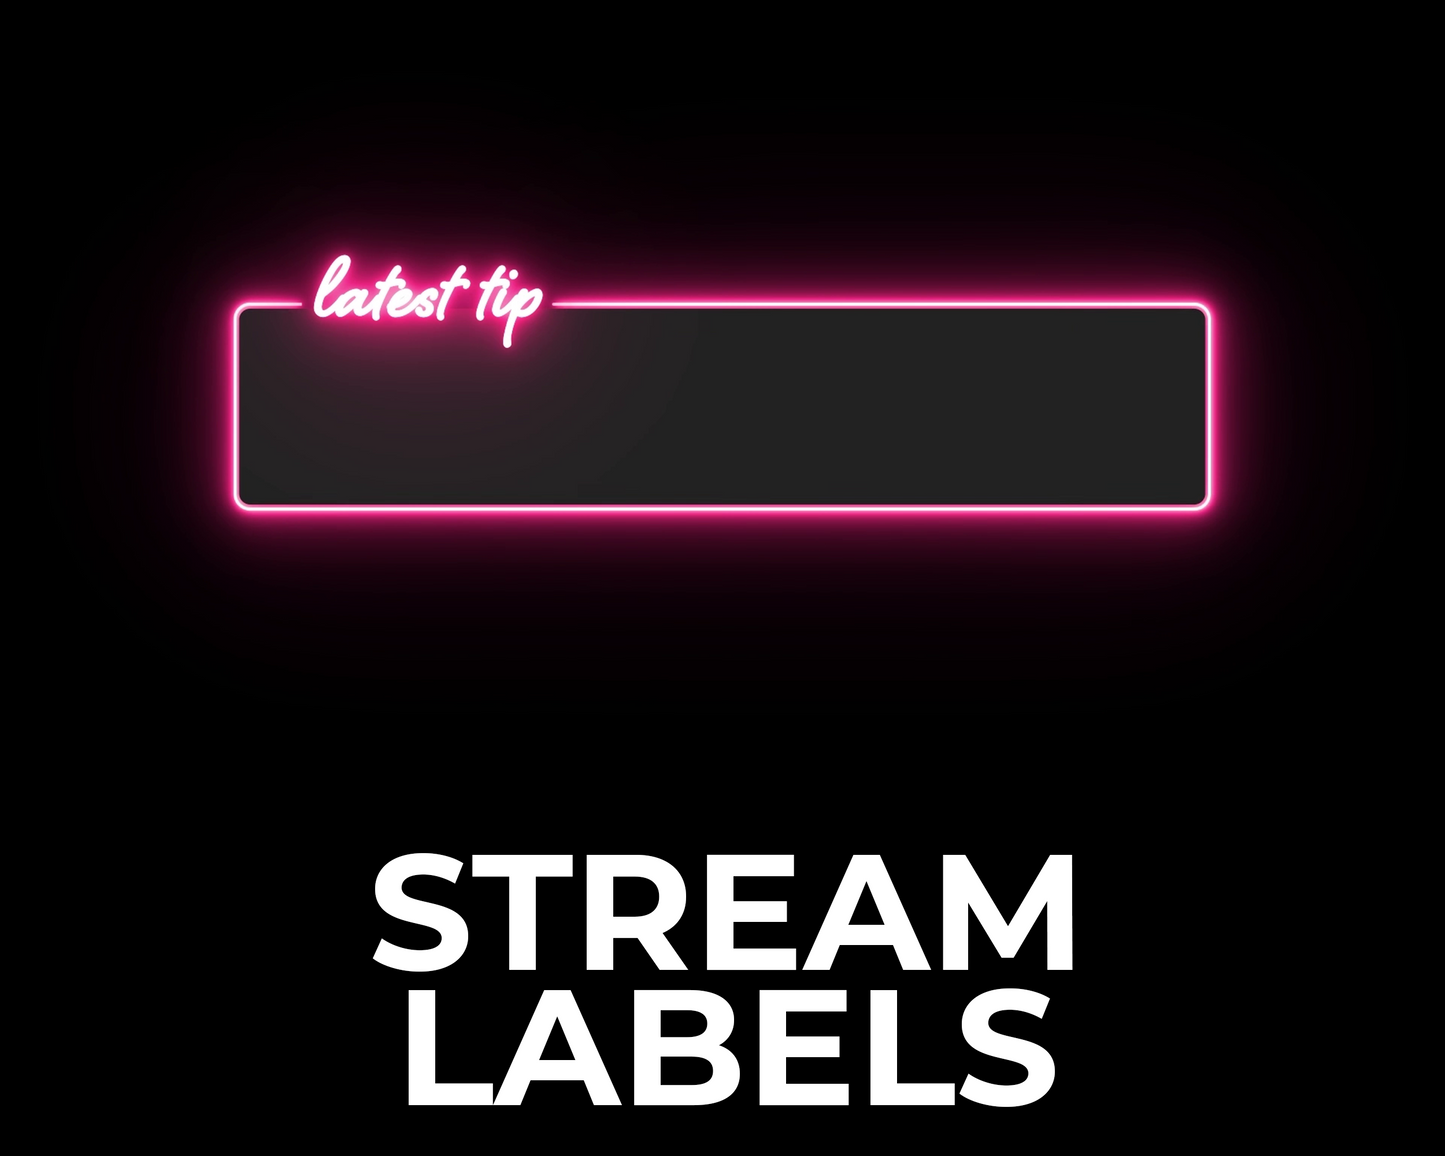 Neon Twitch Stream Labels